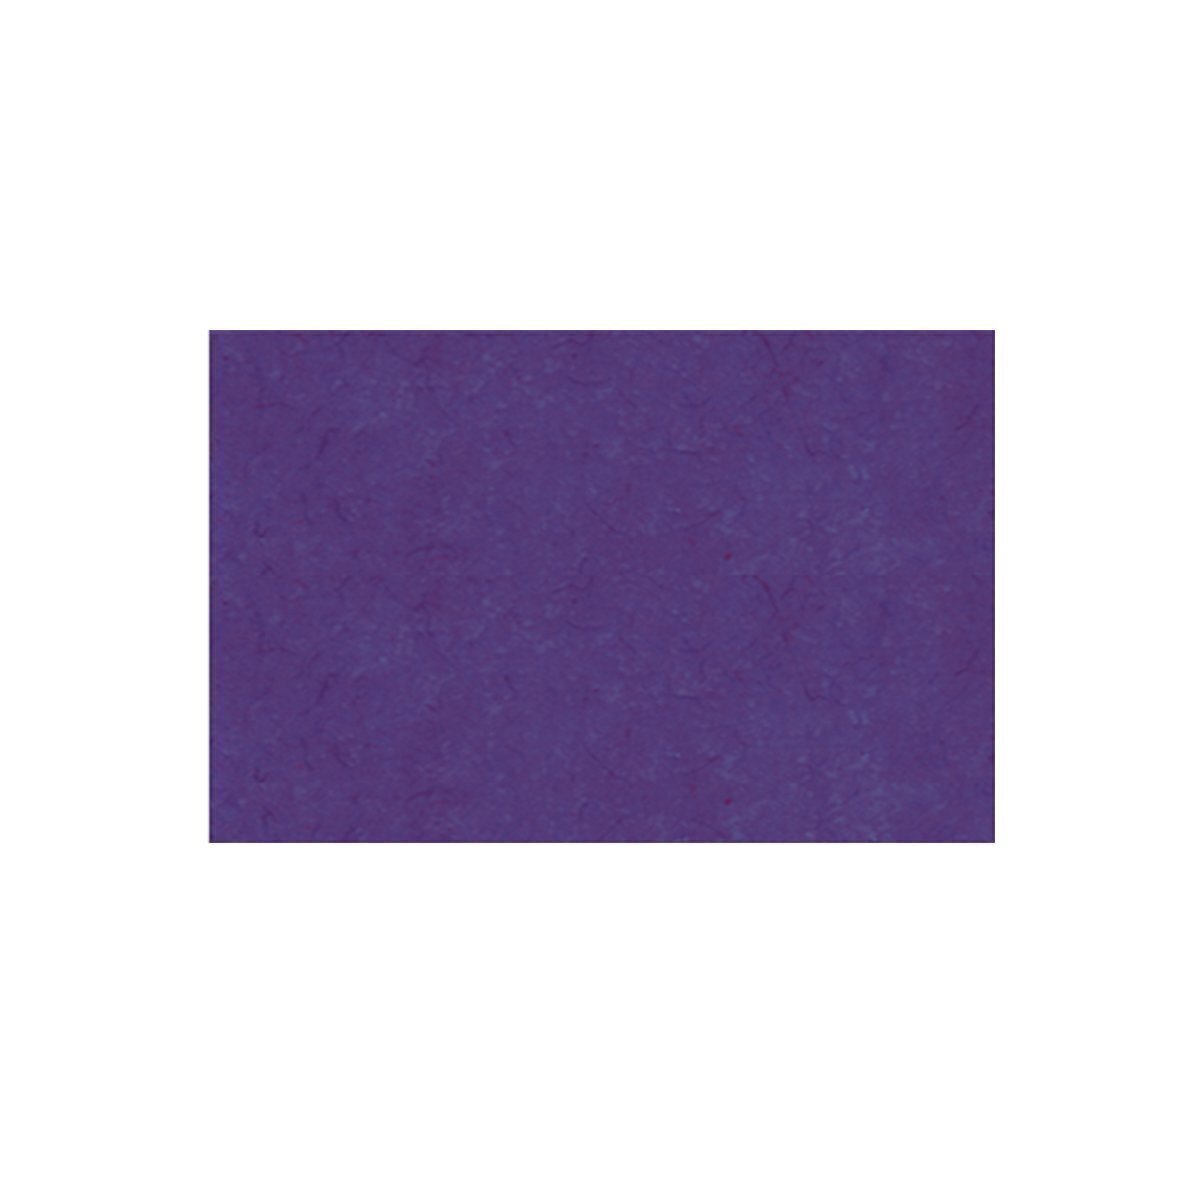 Drachenpapier 42 g, 70 x 100 cm, 1 Rolle, Violett